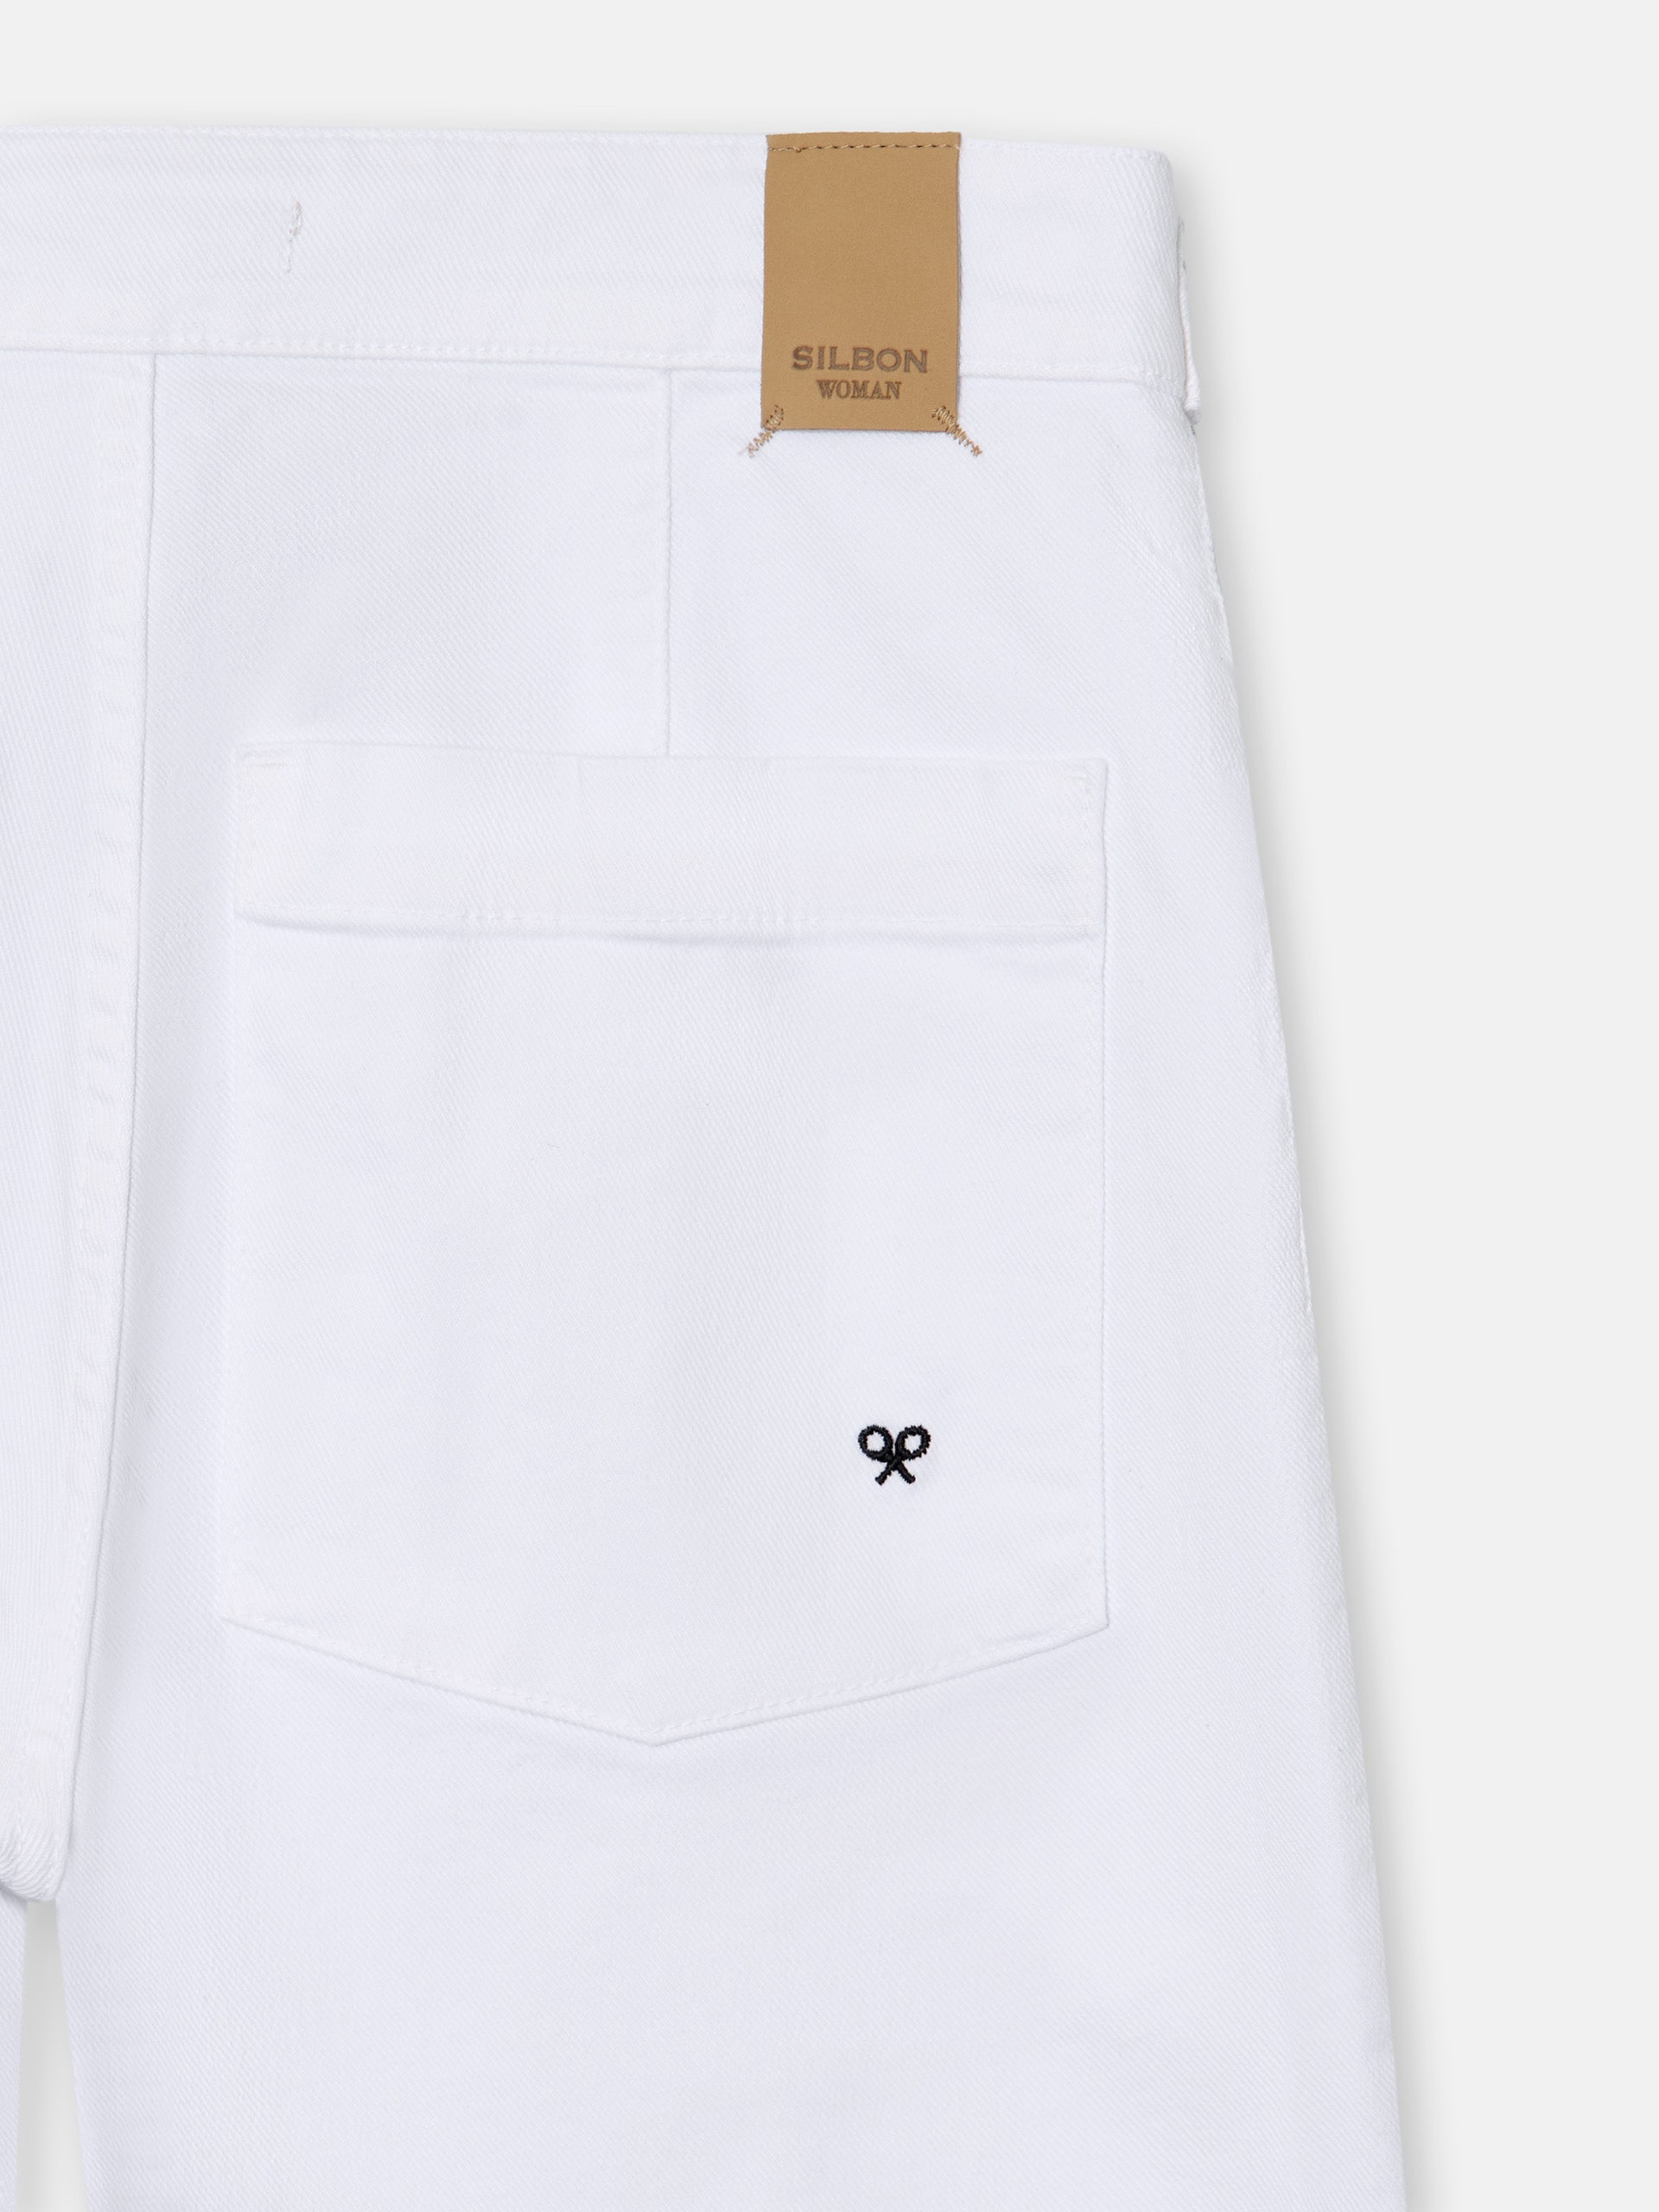 Pantalon en jean marinière blanc